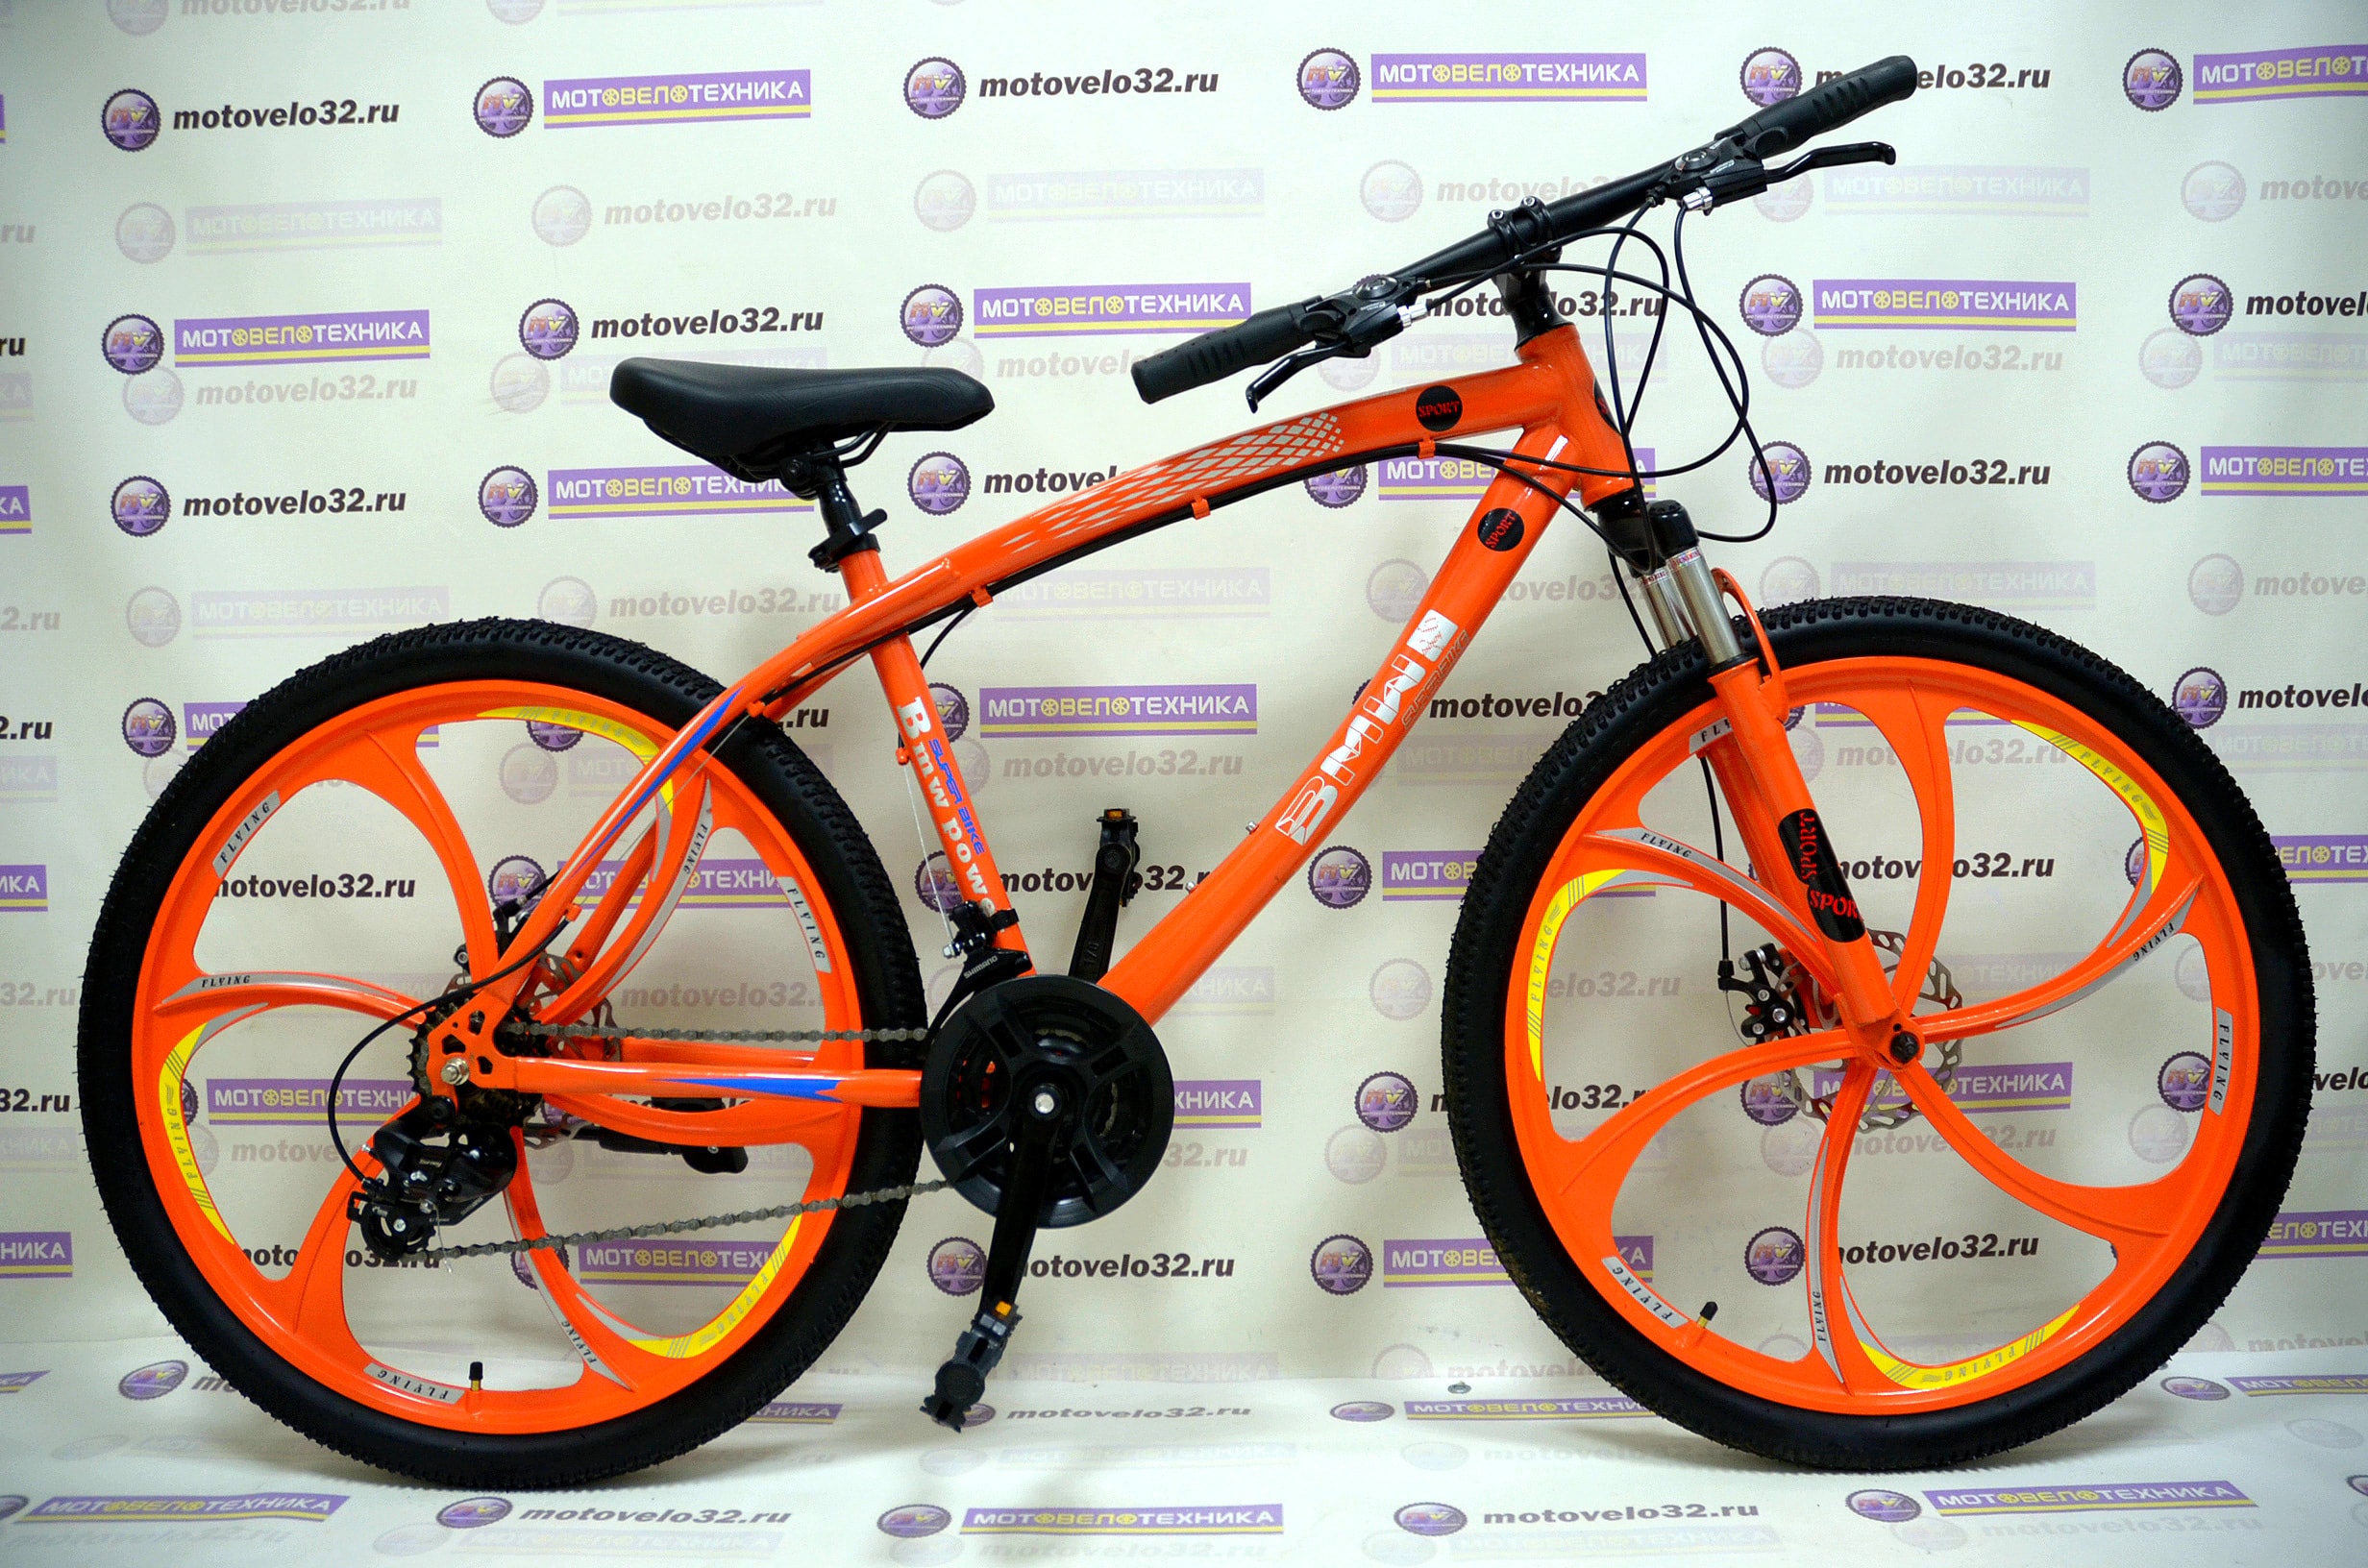 Купить велосипед во владивостоке. Велосипед Sport 26. Велосипед MDS Sports 26 с литыми колесами взрослый. Велосипед Sport оранжевый литых дисках. Горный велосипед на литых дисках.